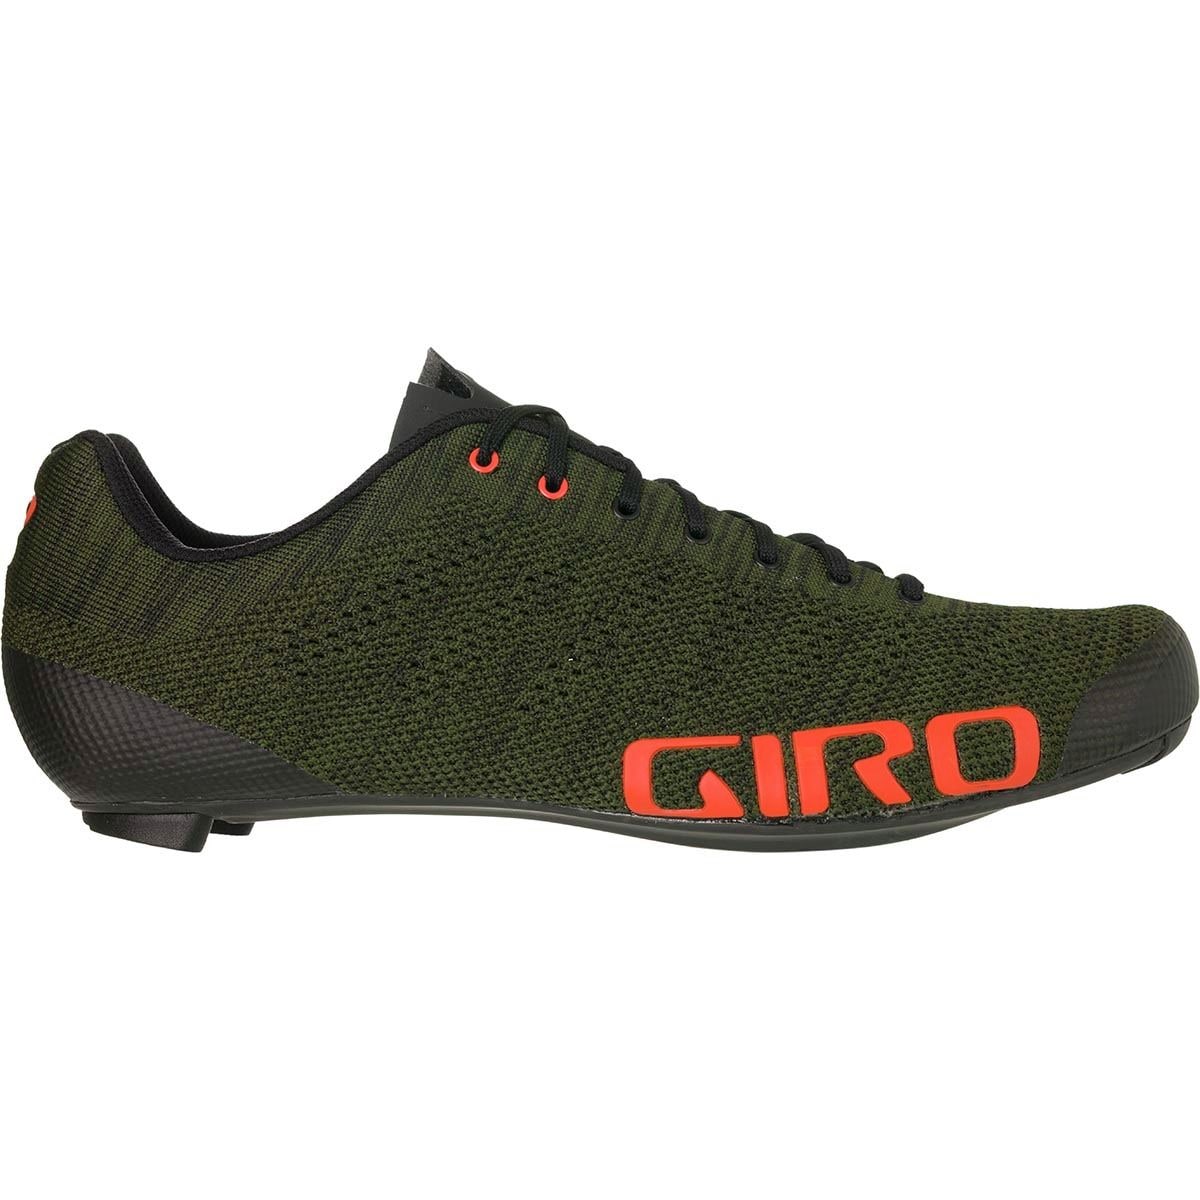 Giro Empire E70 Studio Collection Cycling Shoe - Men's